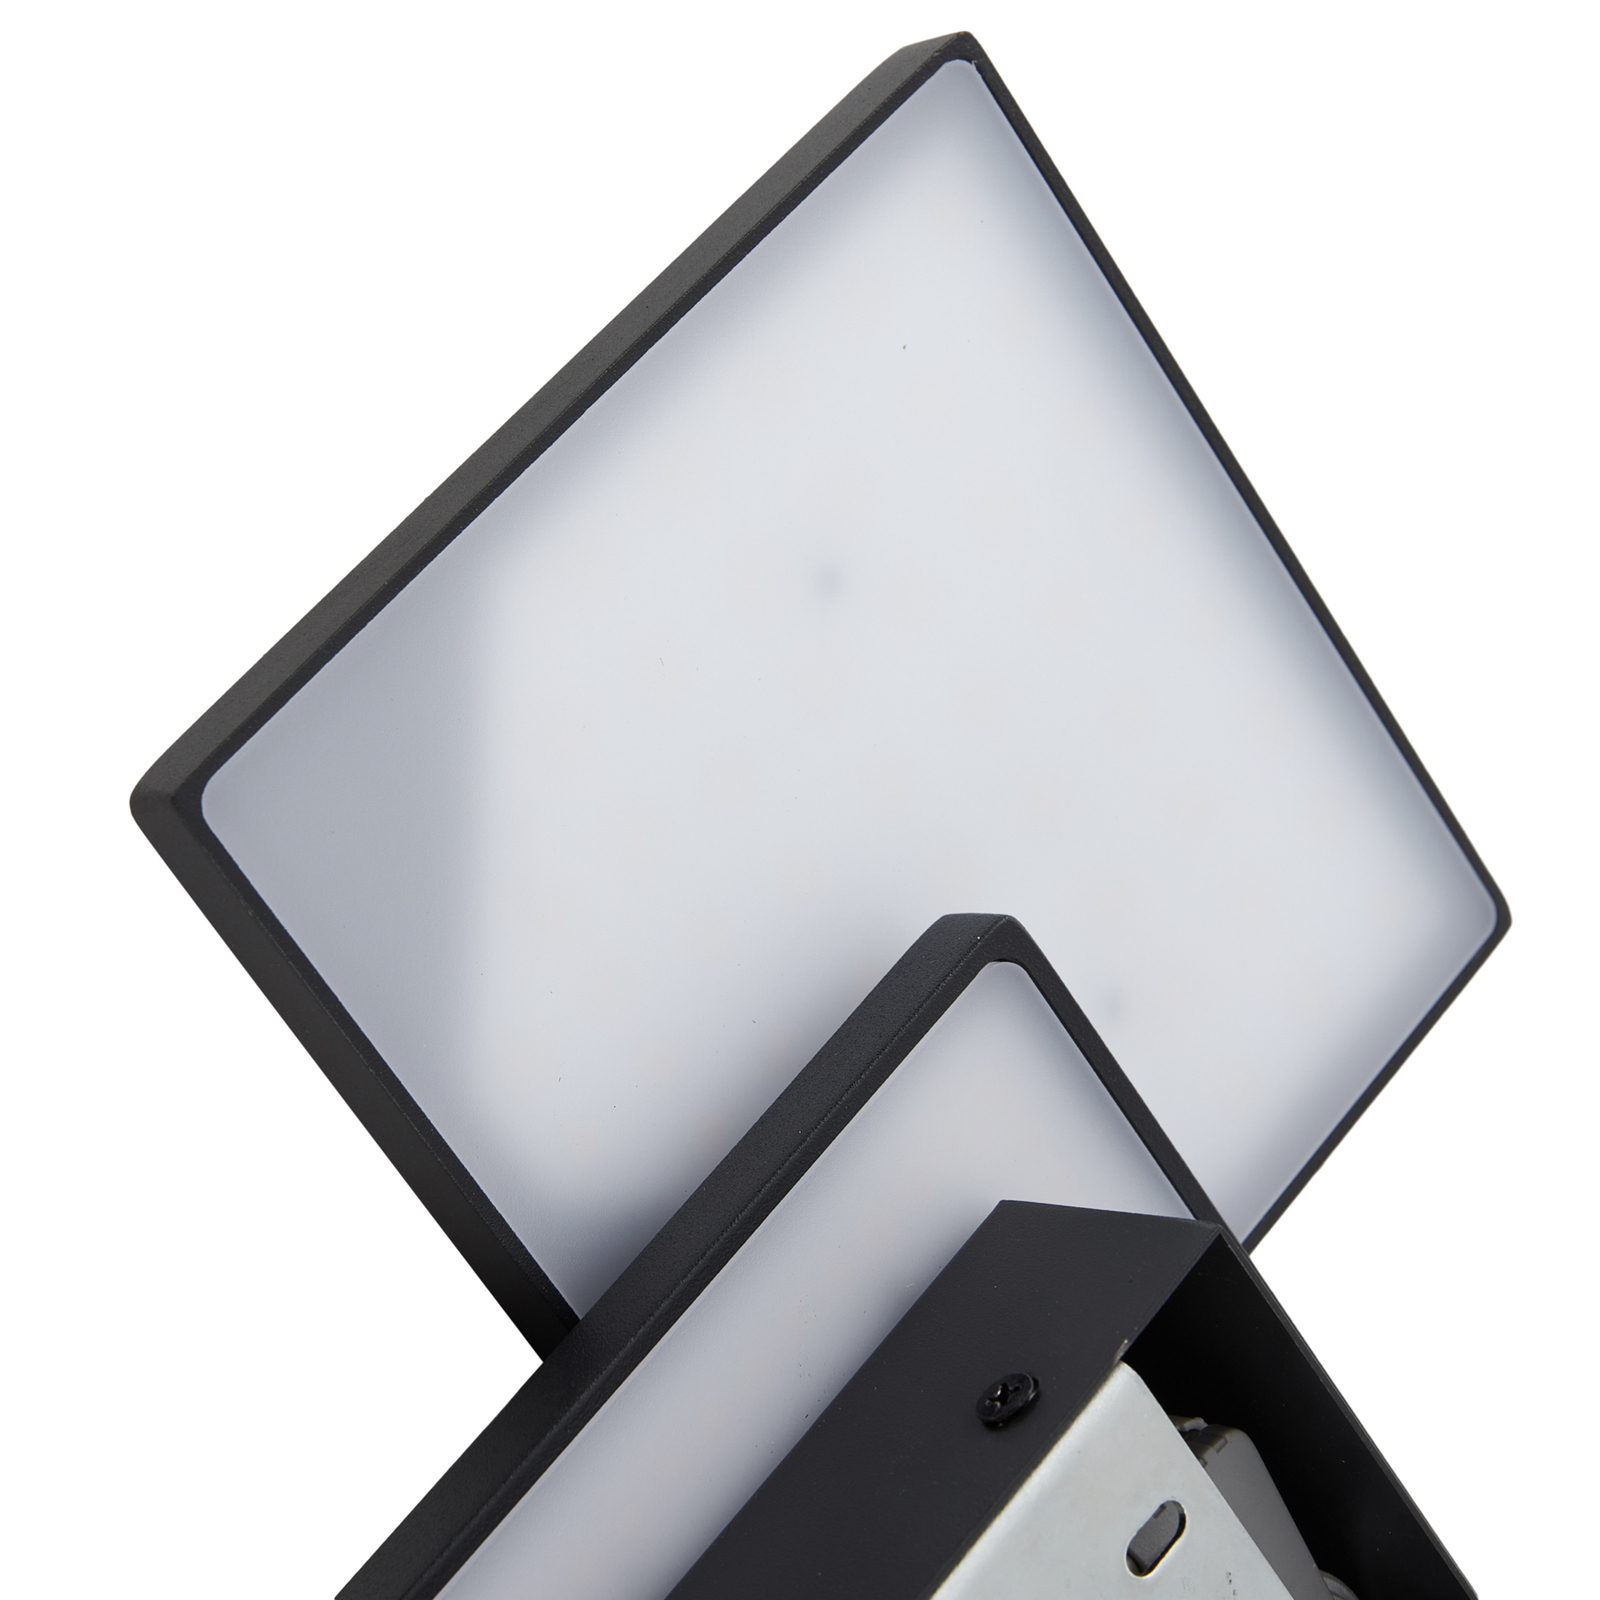 Lucande LED-es fali lámpa Elrik, fekete, 27 cm magas, fém